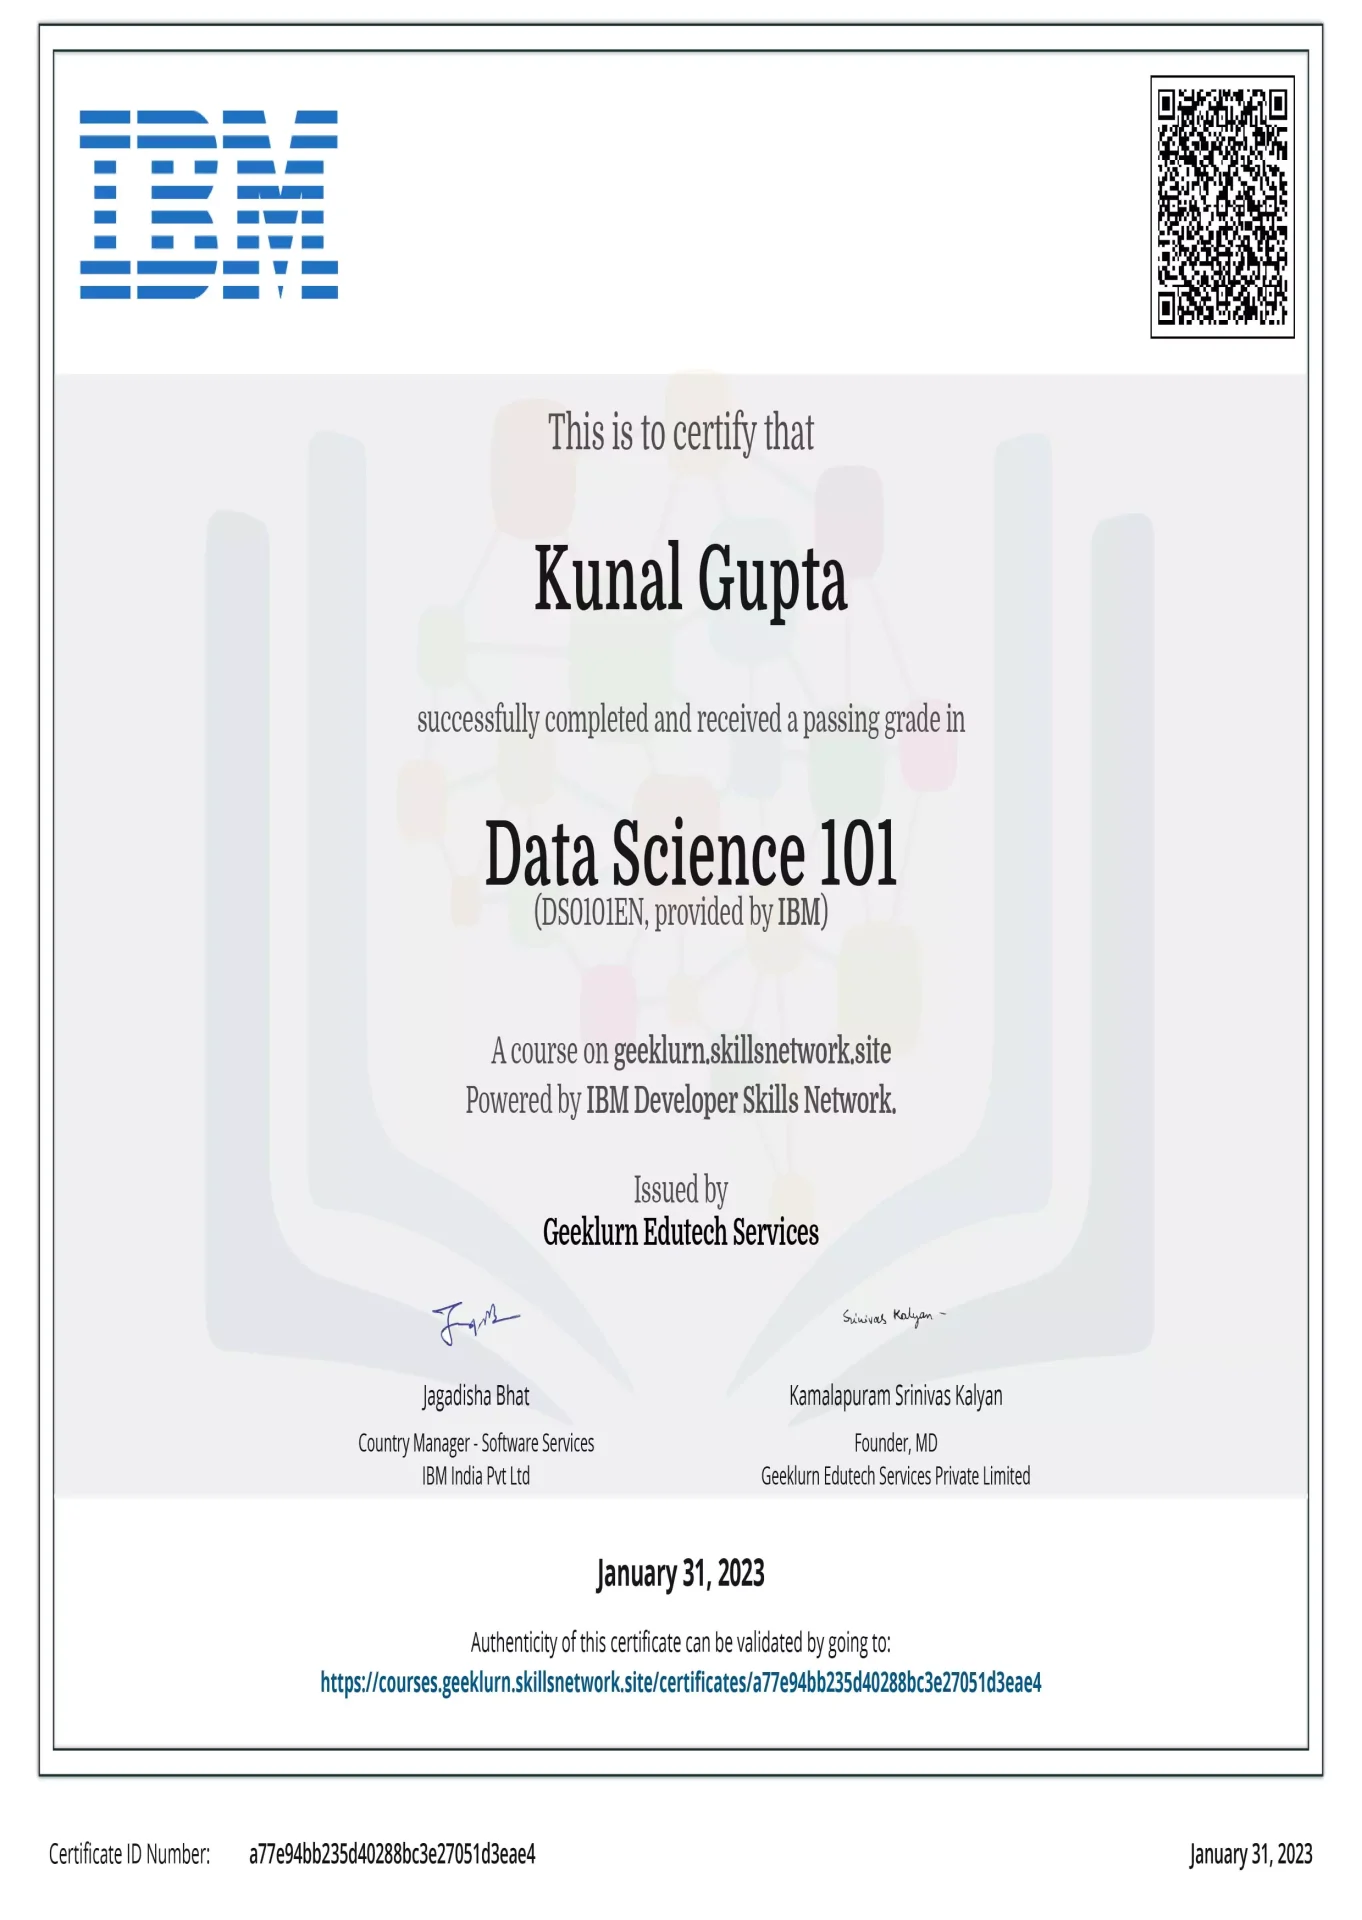 ibm-ds0101en-certificate-geeklurn-edutech-services-3